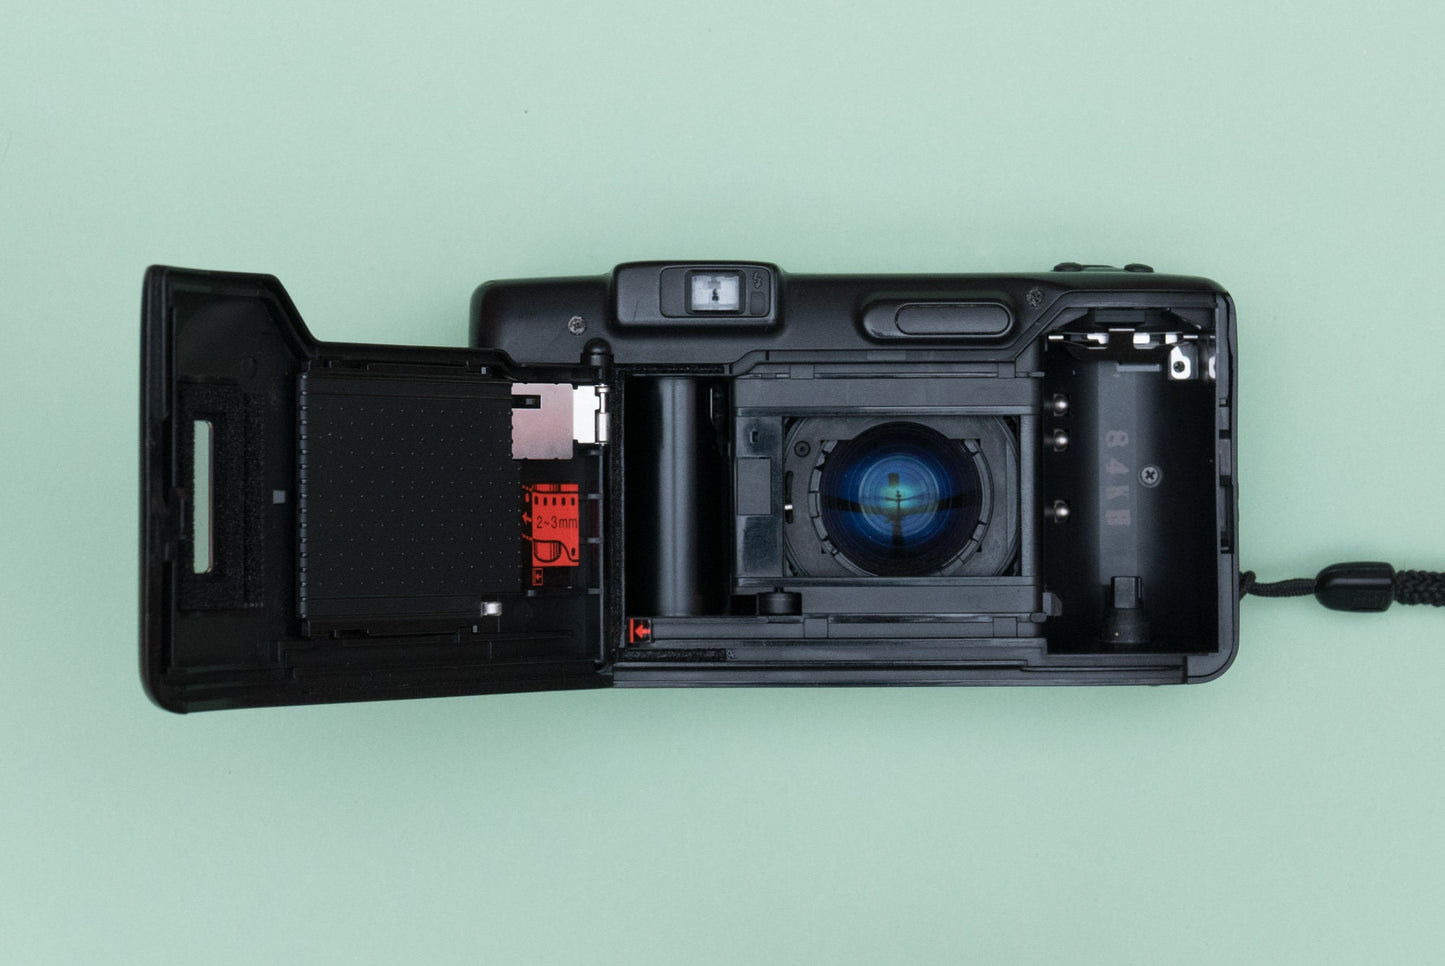 Nikon Zoom 300 AF Compact 35mm Film Camera